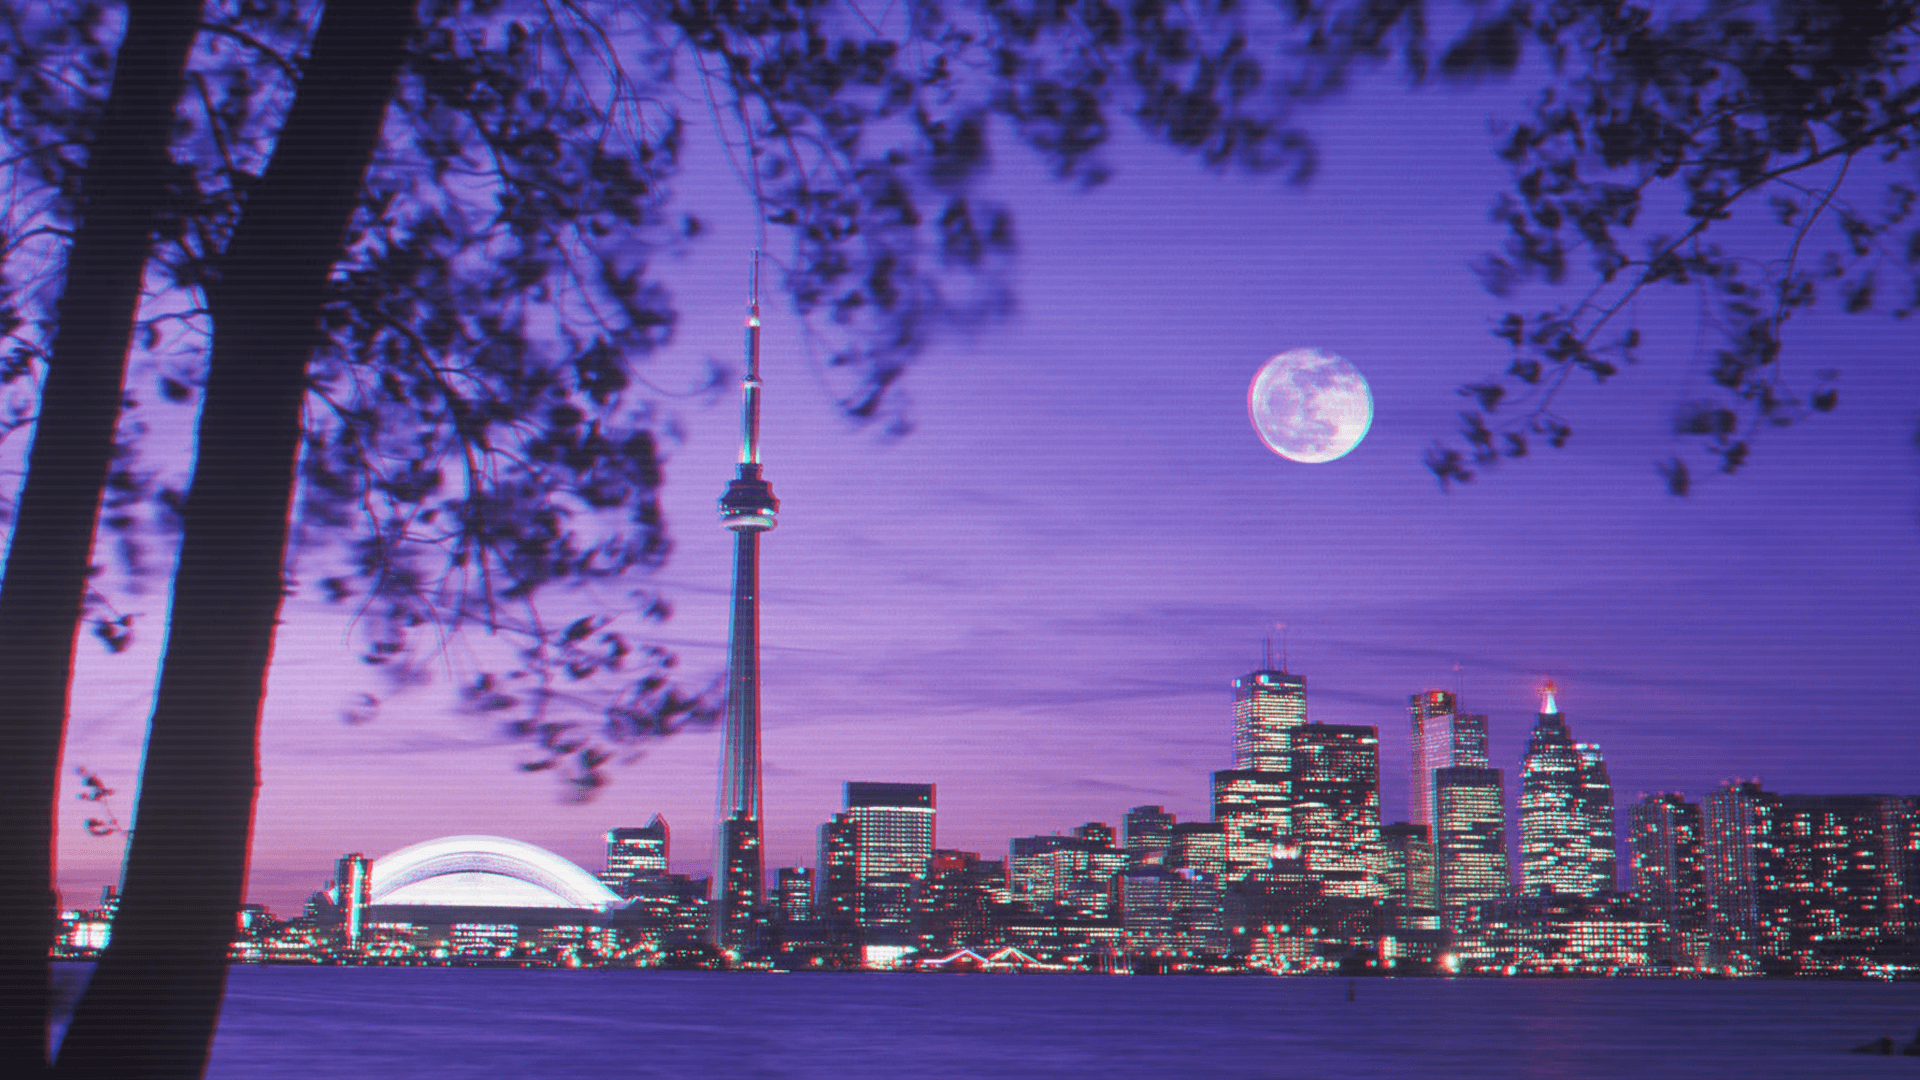 Toronto skyline 1920 × 1080